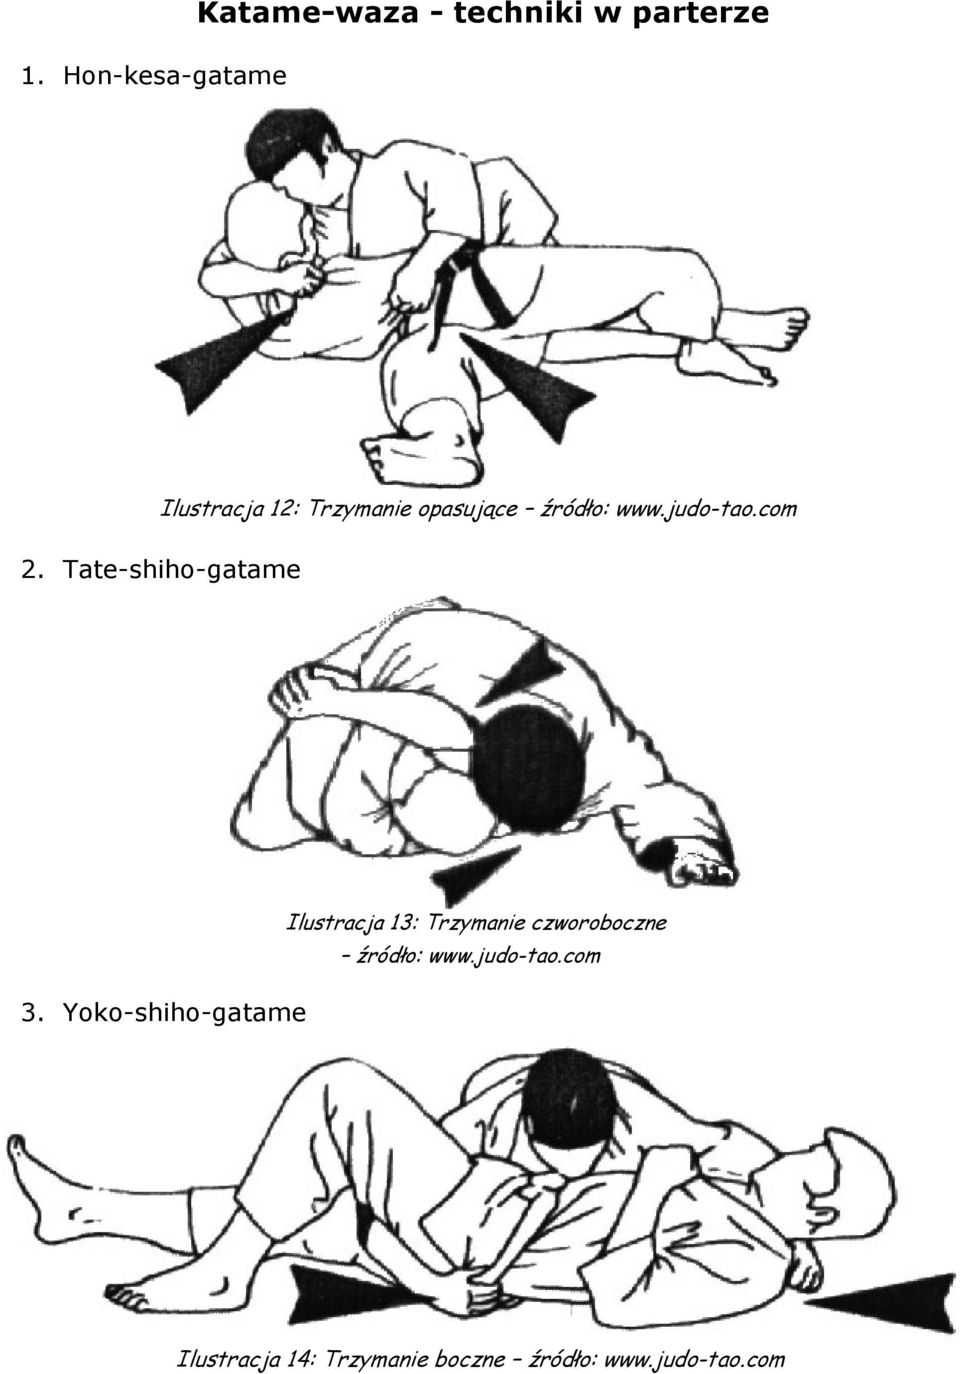 Yoko-shiho-gatame Ilustracja 13: Trzymanie czworoboczne źródło: www.